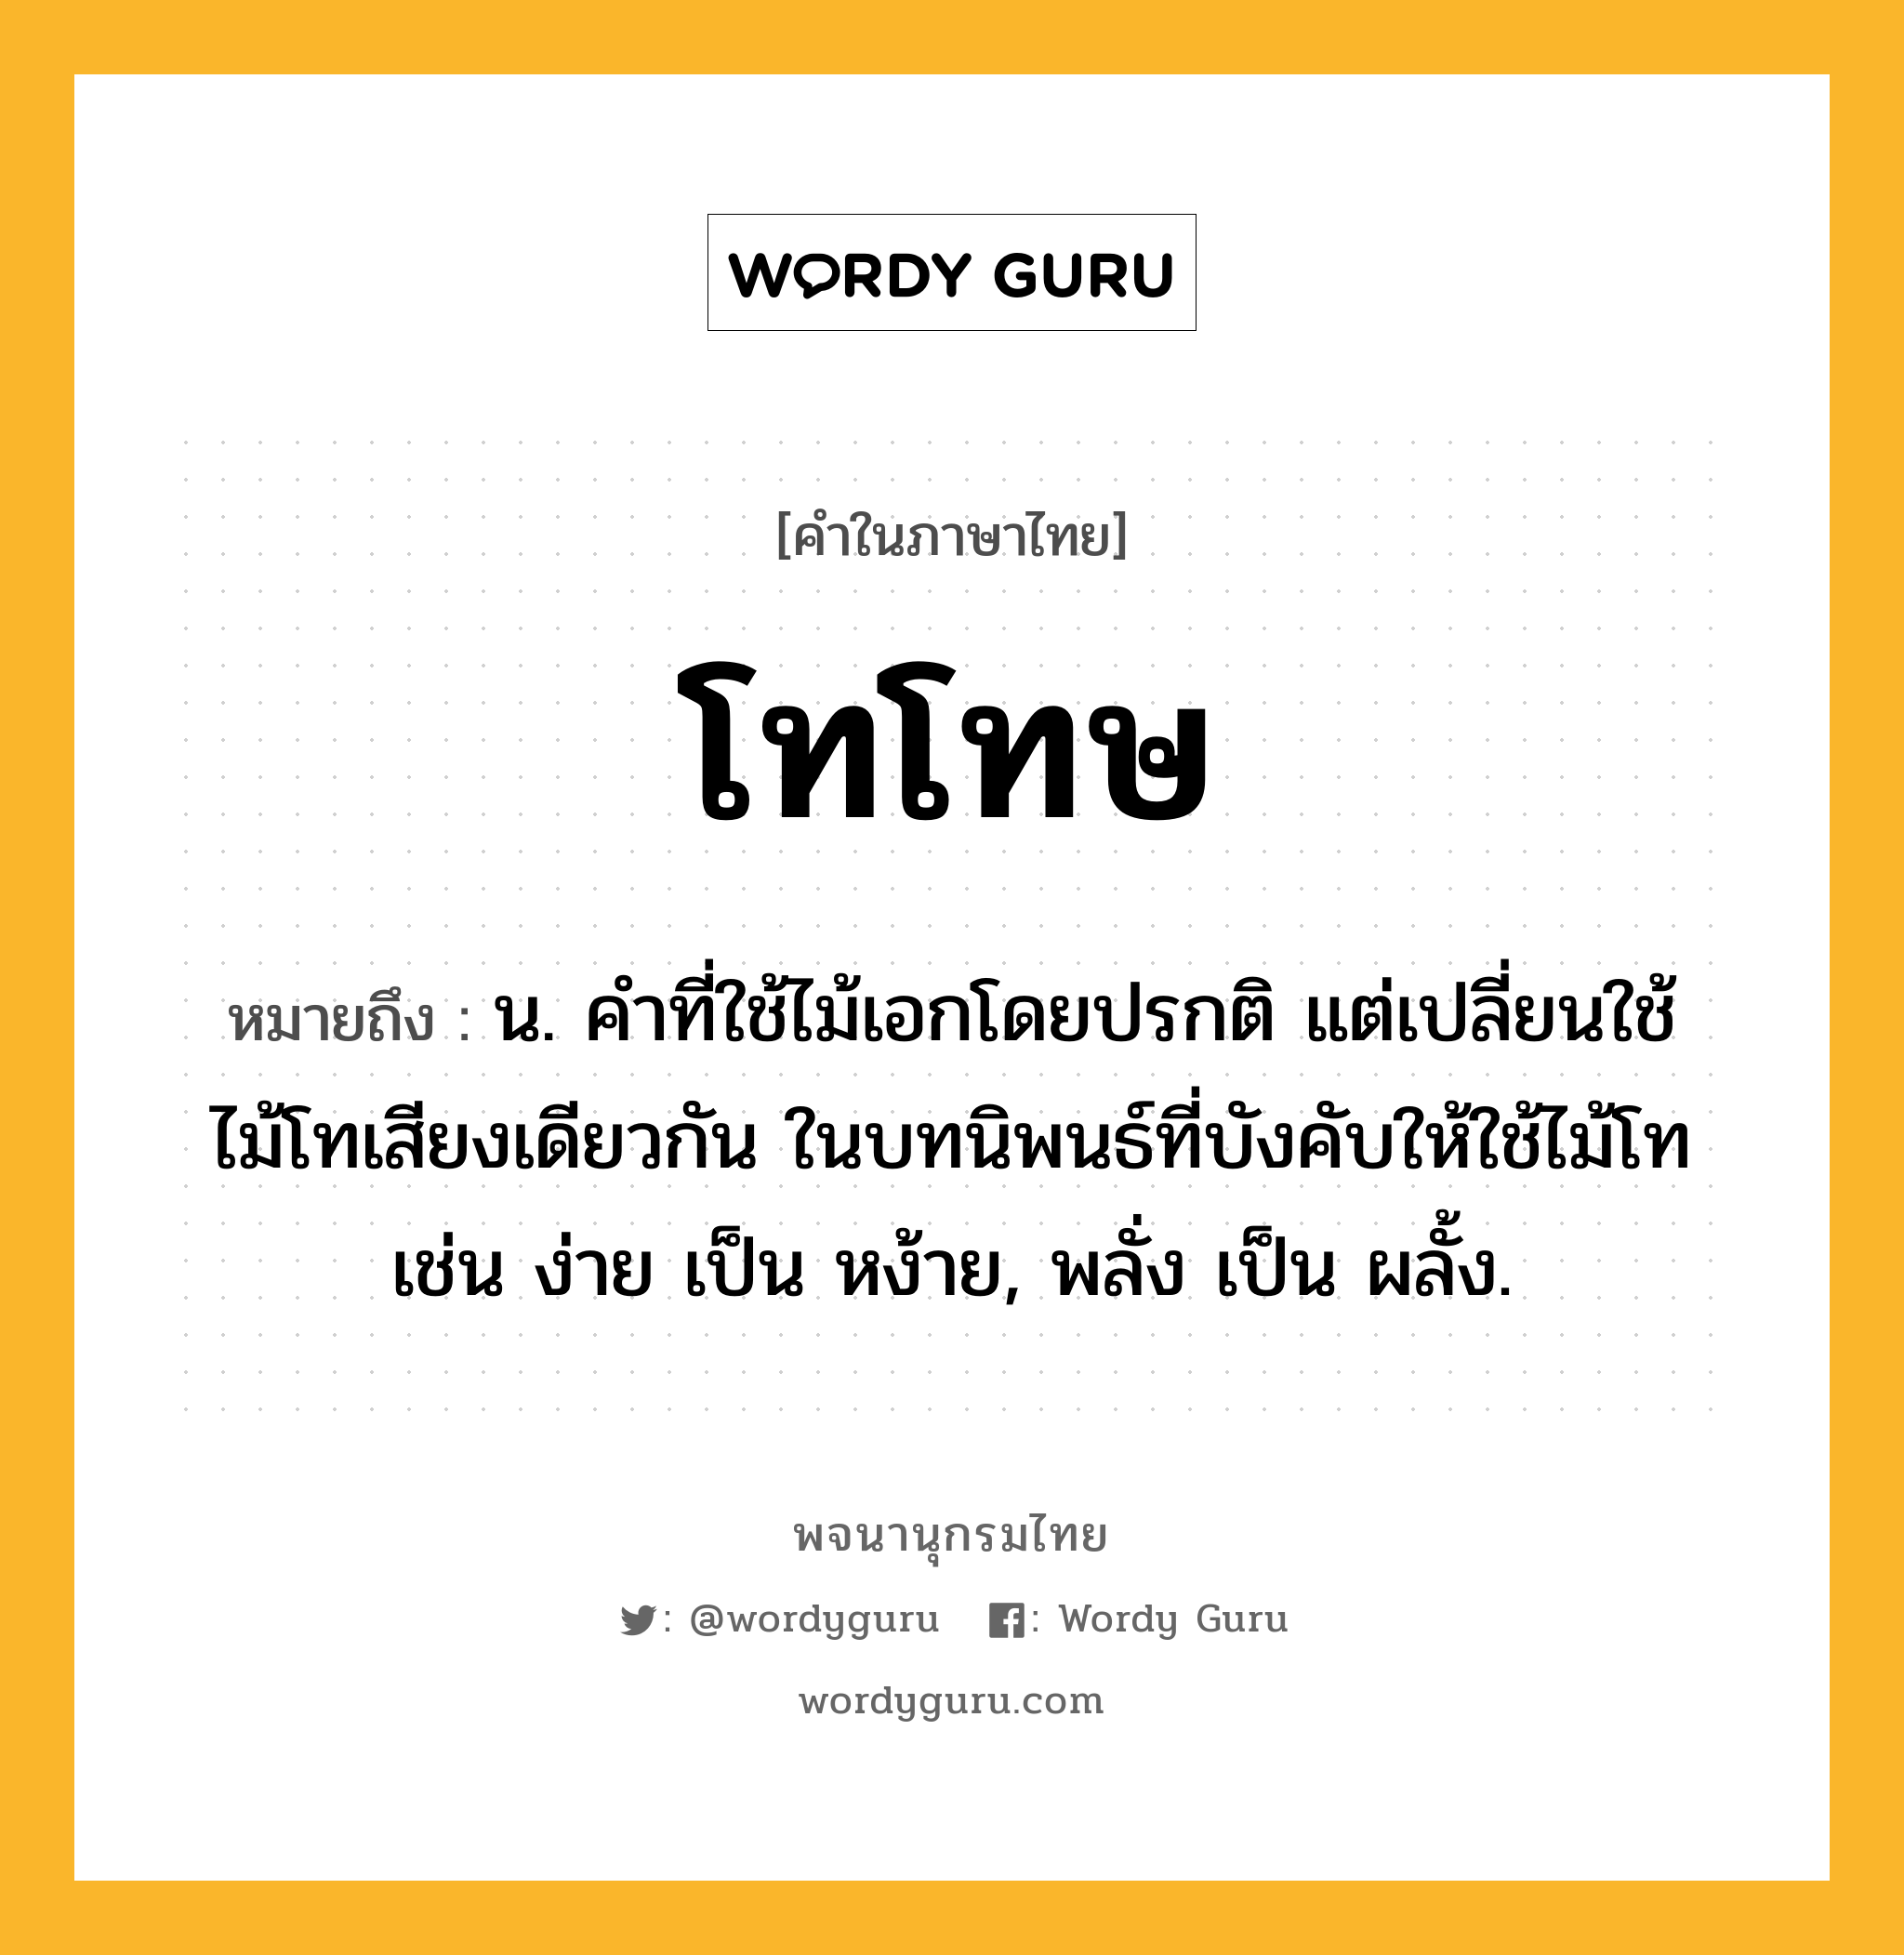 โทโทษ ความหมาย หมายถึงอะไร?, คำในภาษาไทย โทโทษ หมายถึง น. คําที่ใช้ไม้เอกโดยปรกติ แต่เปลี่ยนใช้ไม้โทเสียงเดียวกัน ในบทนิพนธ์ที่บังคับให้ใช้ไม้โท เช่น ง่าย เป็น หง้าย, พลั่ง เป็น ผลั้ง.